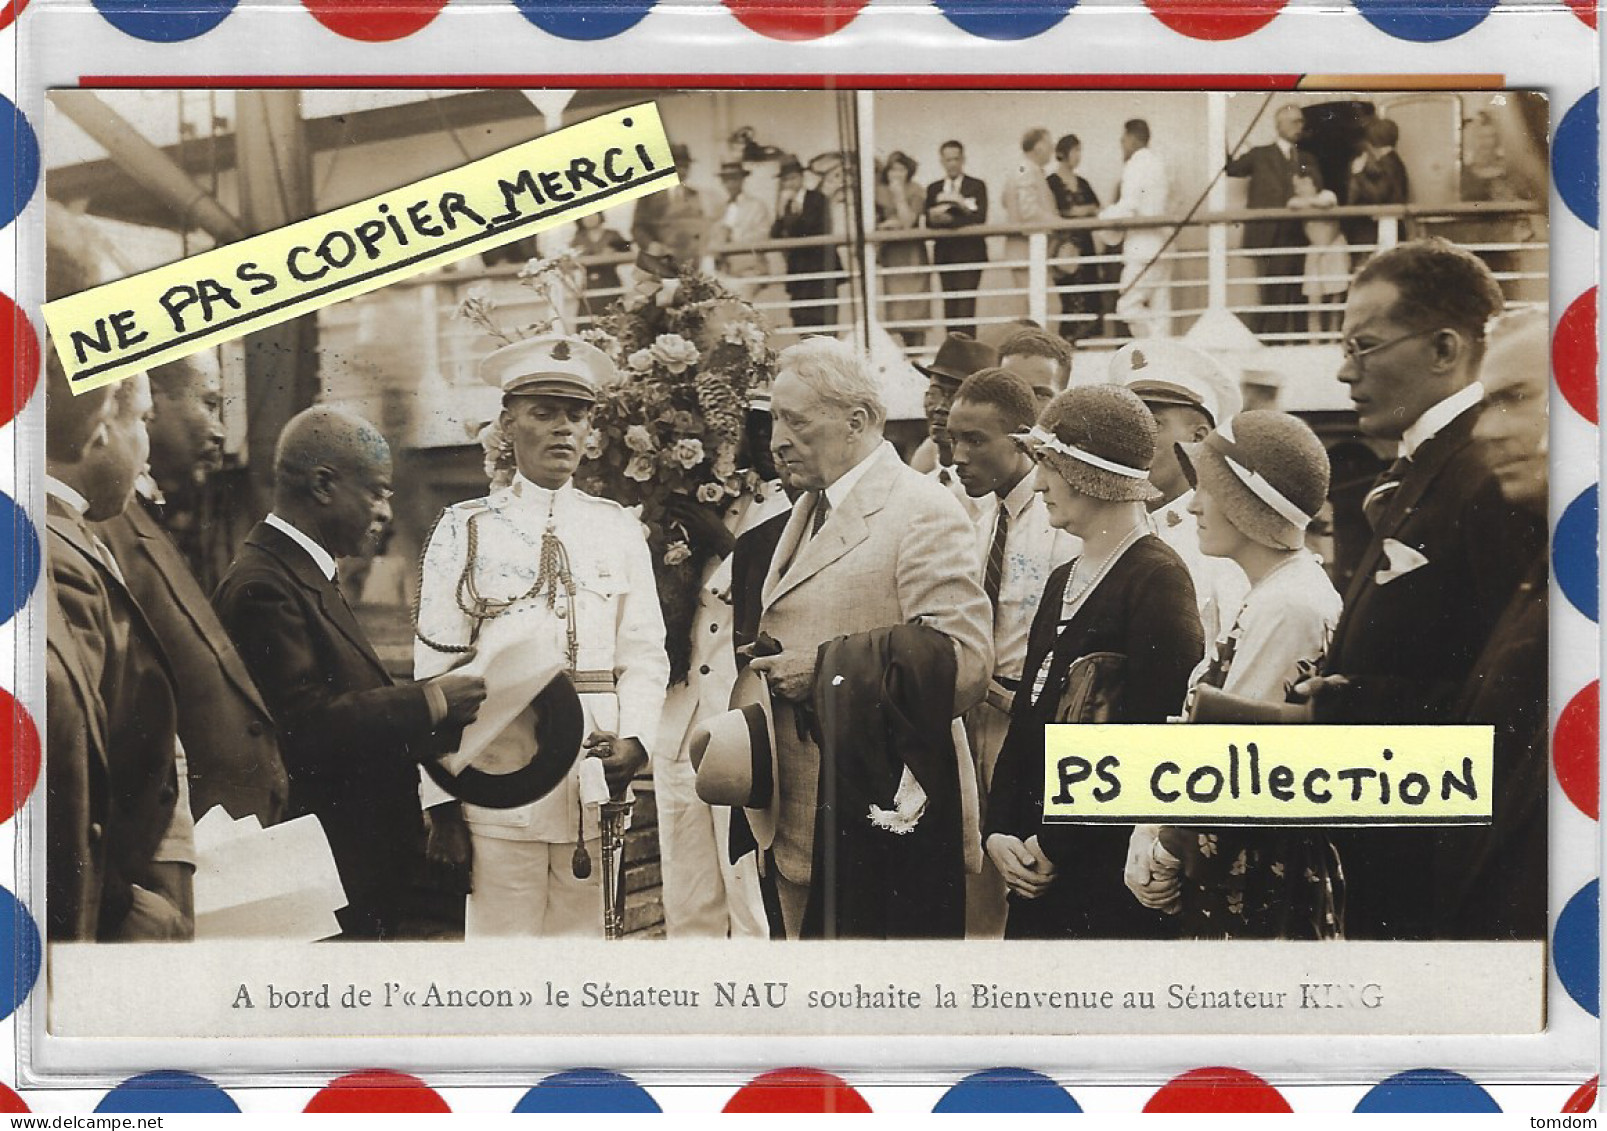 Antilles *** Haïti - A Bord De L'Ancon Le Sénateur NAU Souhaite La Bienvenue Au Sénateur King Le 27/03/1921 /carte Photo - Haiti